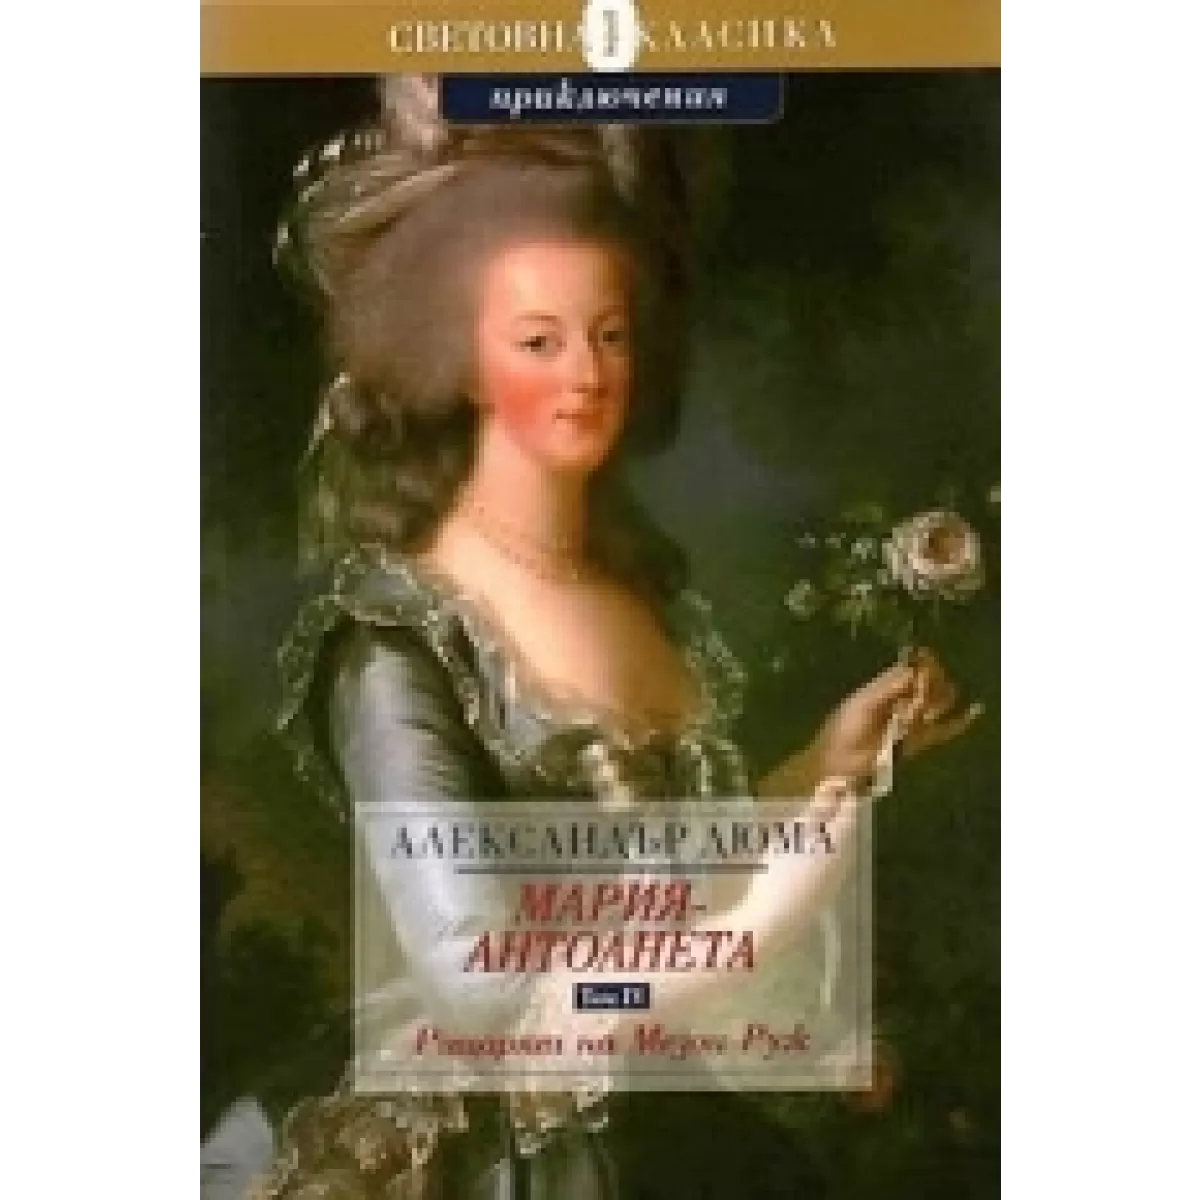 Мария-Антоанета: Рицарят на Мезон-Руж